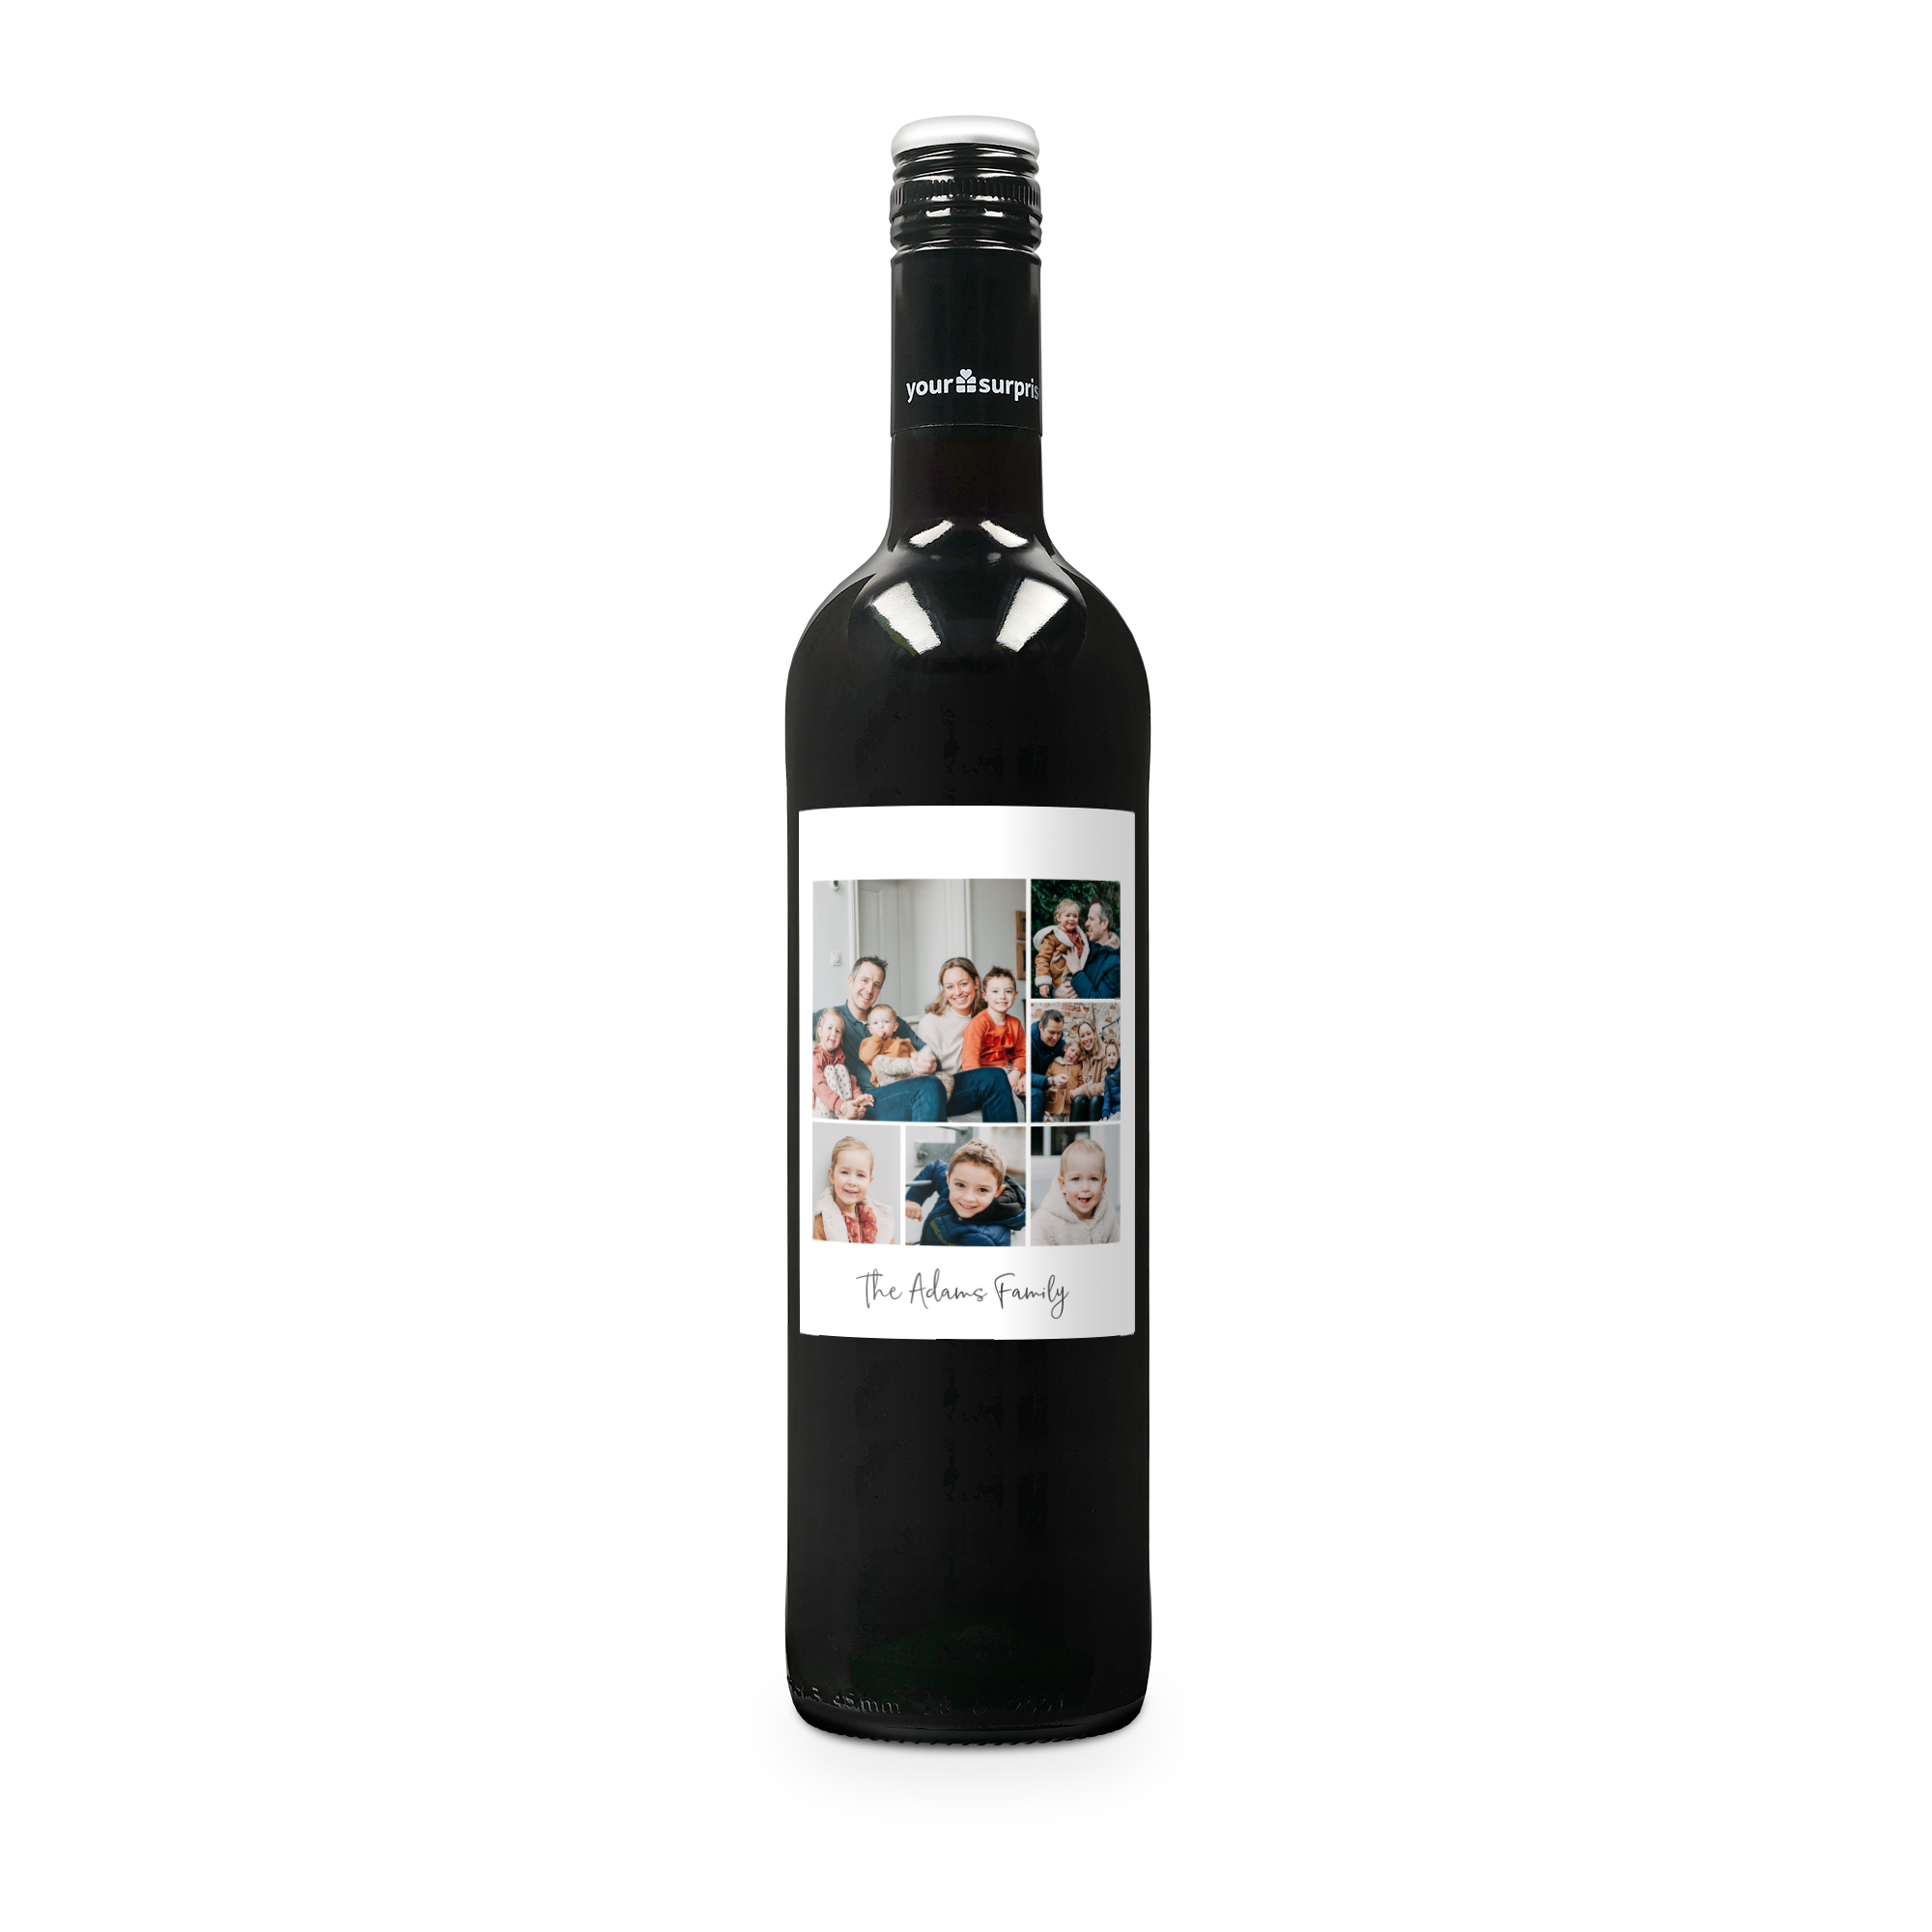 Víno s personalizovanou etiketou - Maison de la Surprise - Cabernet Sauvignon